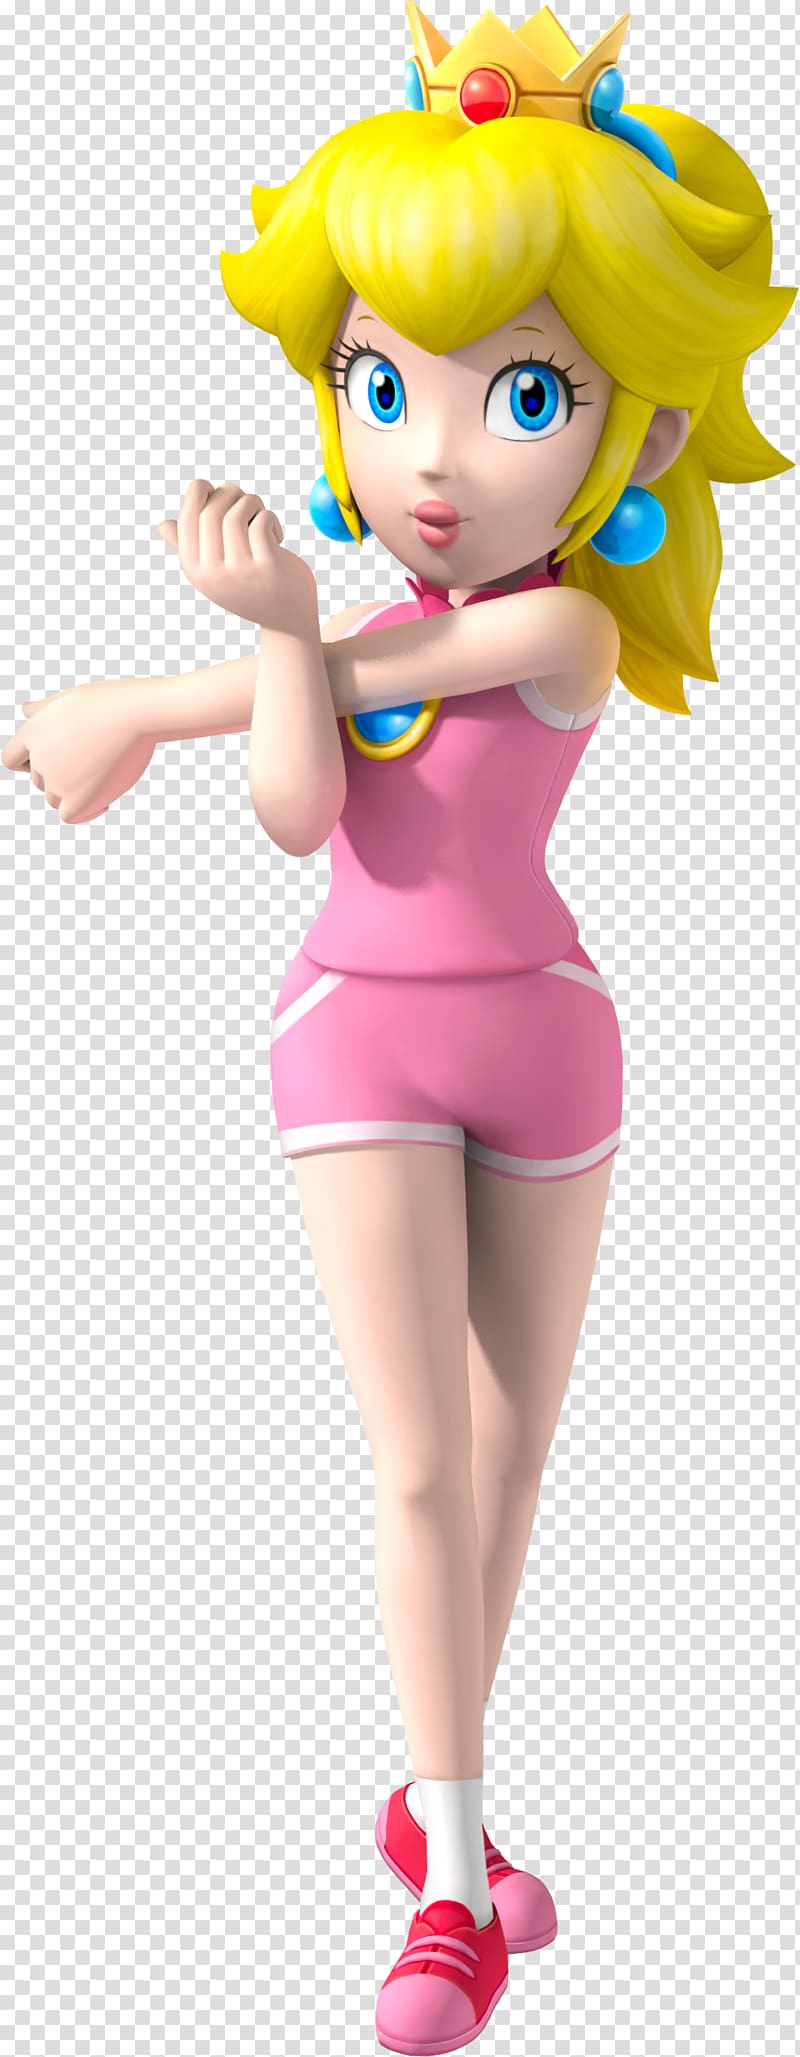 Princess Peach Princess Daisy Super Mario Bros. Rosalina, mario transparent background PNG clipart